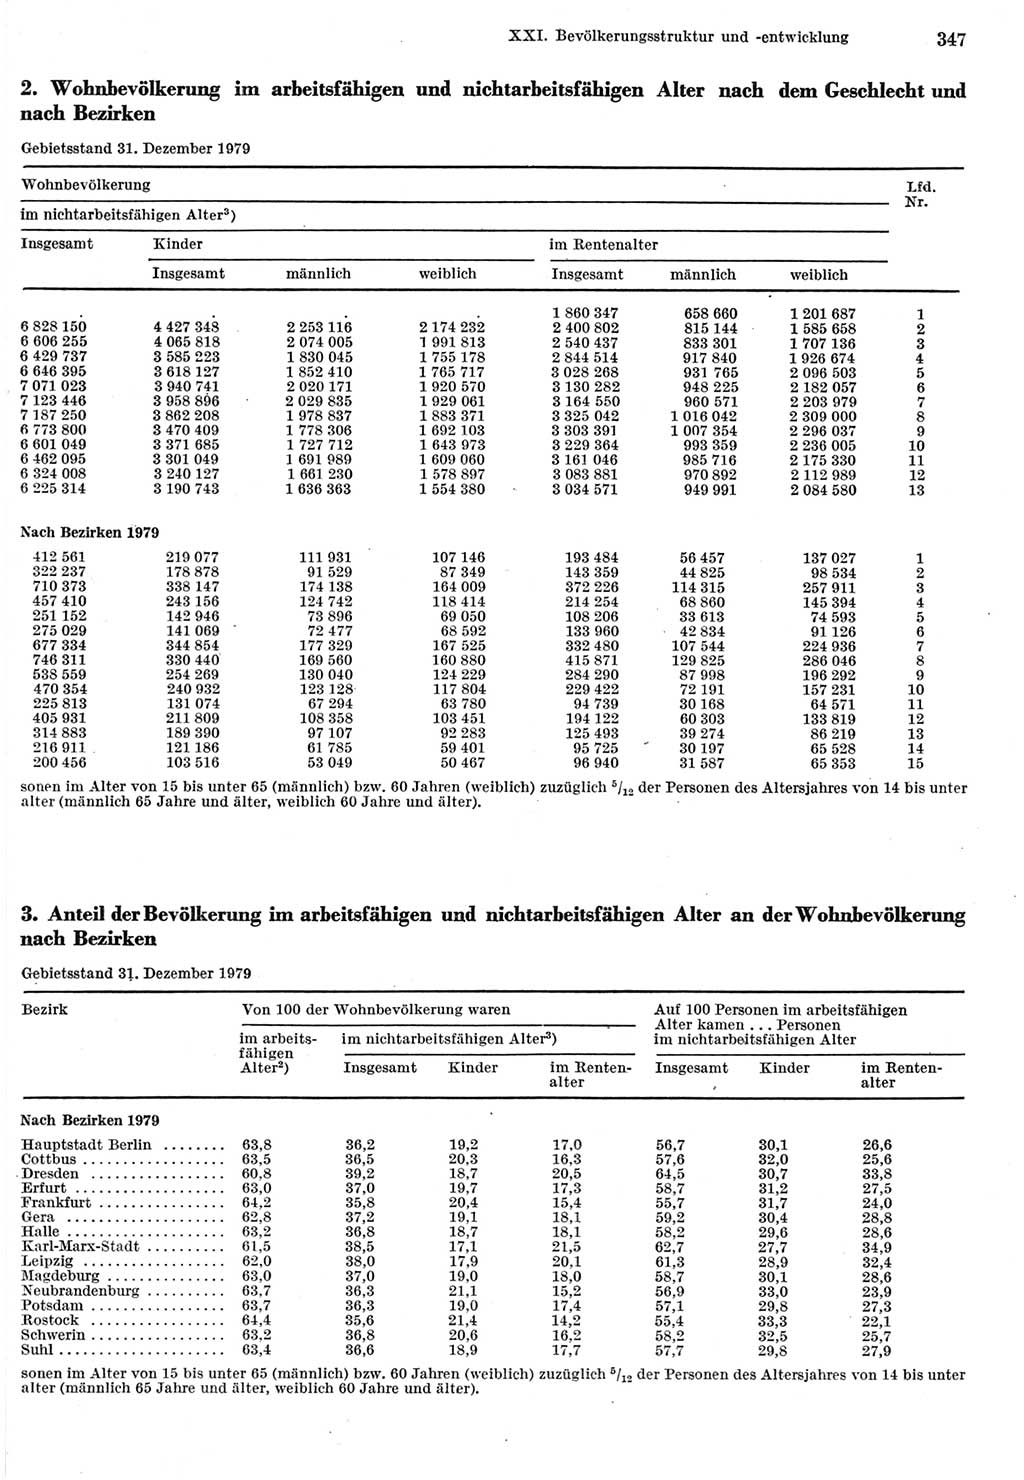 Statistisches Jahrbuch der Deutschen Demokratischen Republik (DDR) 1980, Seite 347 (Stat. Jb. DDR 1980, S. 347)